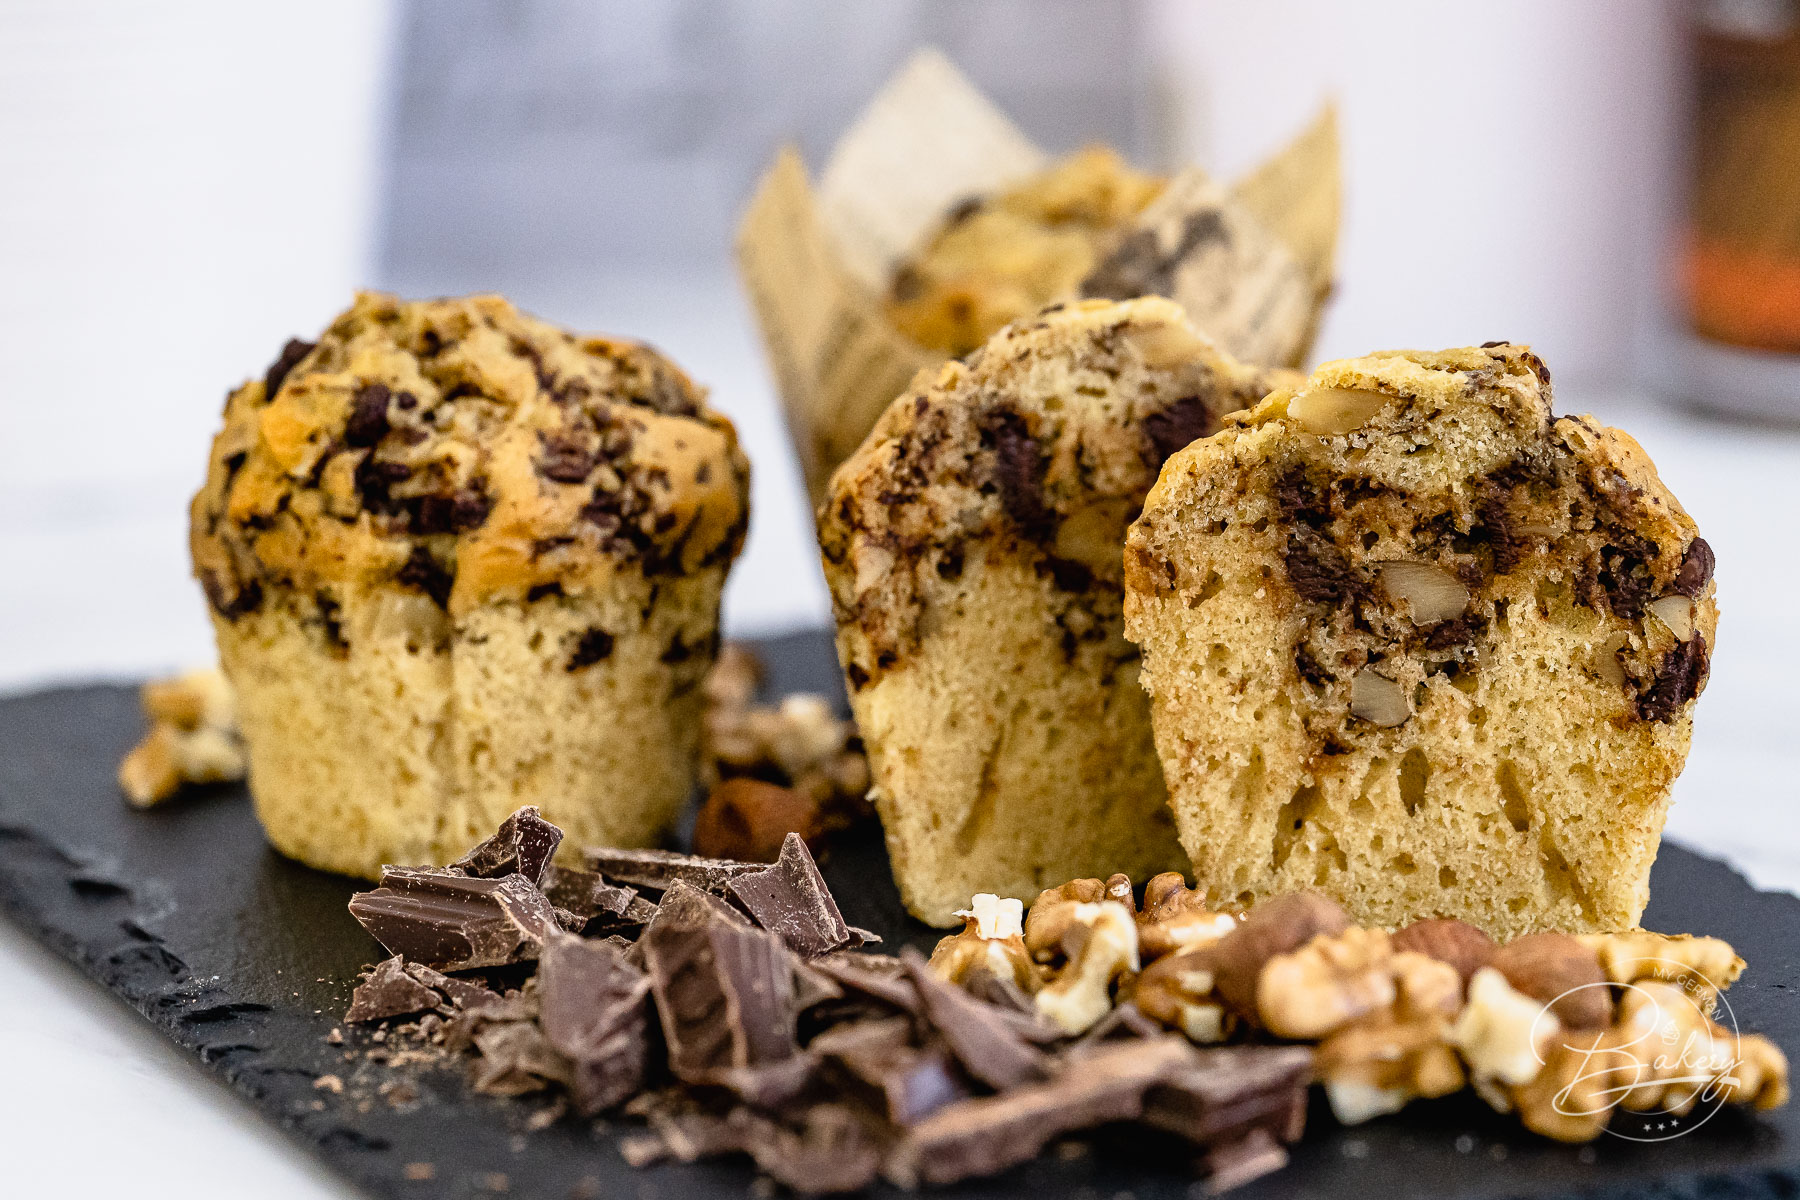 Beste Muffins mit Schokolade - Schokomuffins - einfaches Rezept - Rezept Muffins mit Schokolade und Nuss - extra locker und saftig selbst gemacht - Schoko Muffins und Schokoladen Muffins mit dunkler oder weißer Schokolade, Walnüssen,